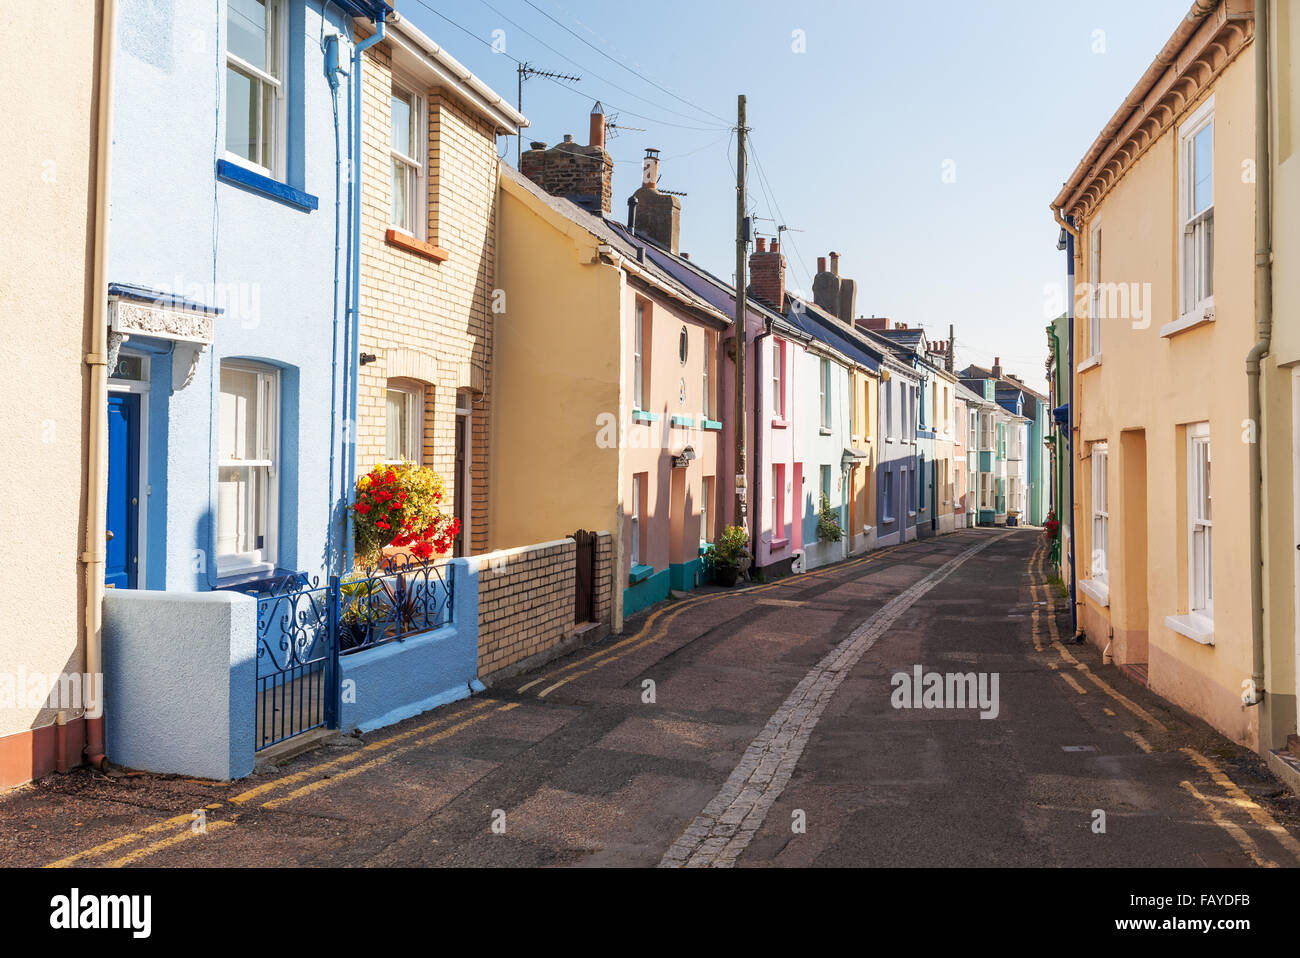 Multicolore, maisons en terrasse dans une rue d'Appledore, North Devon, UK Banque D'Images